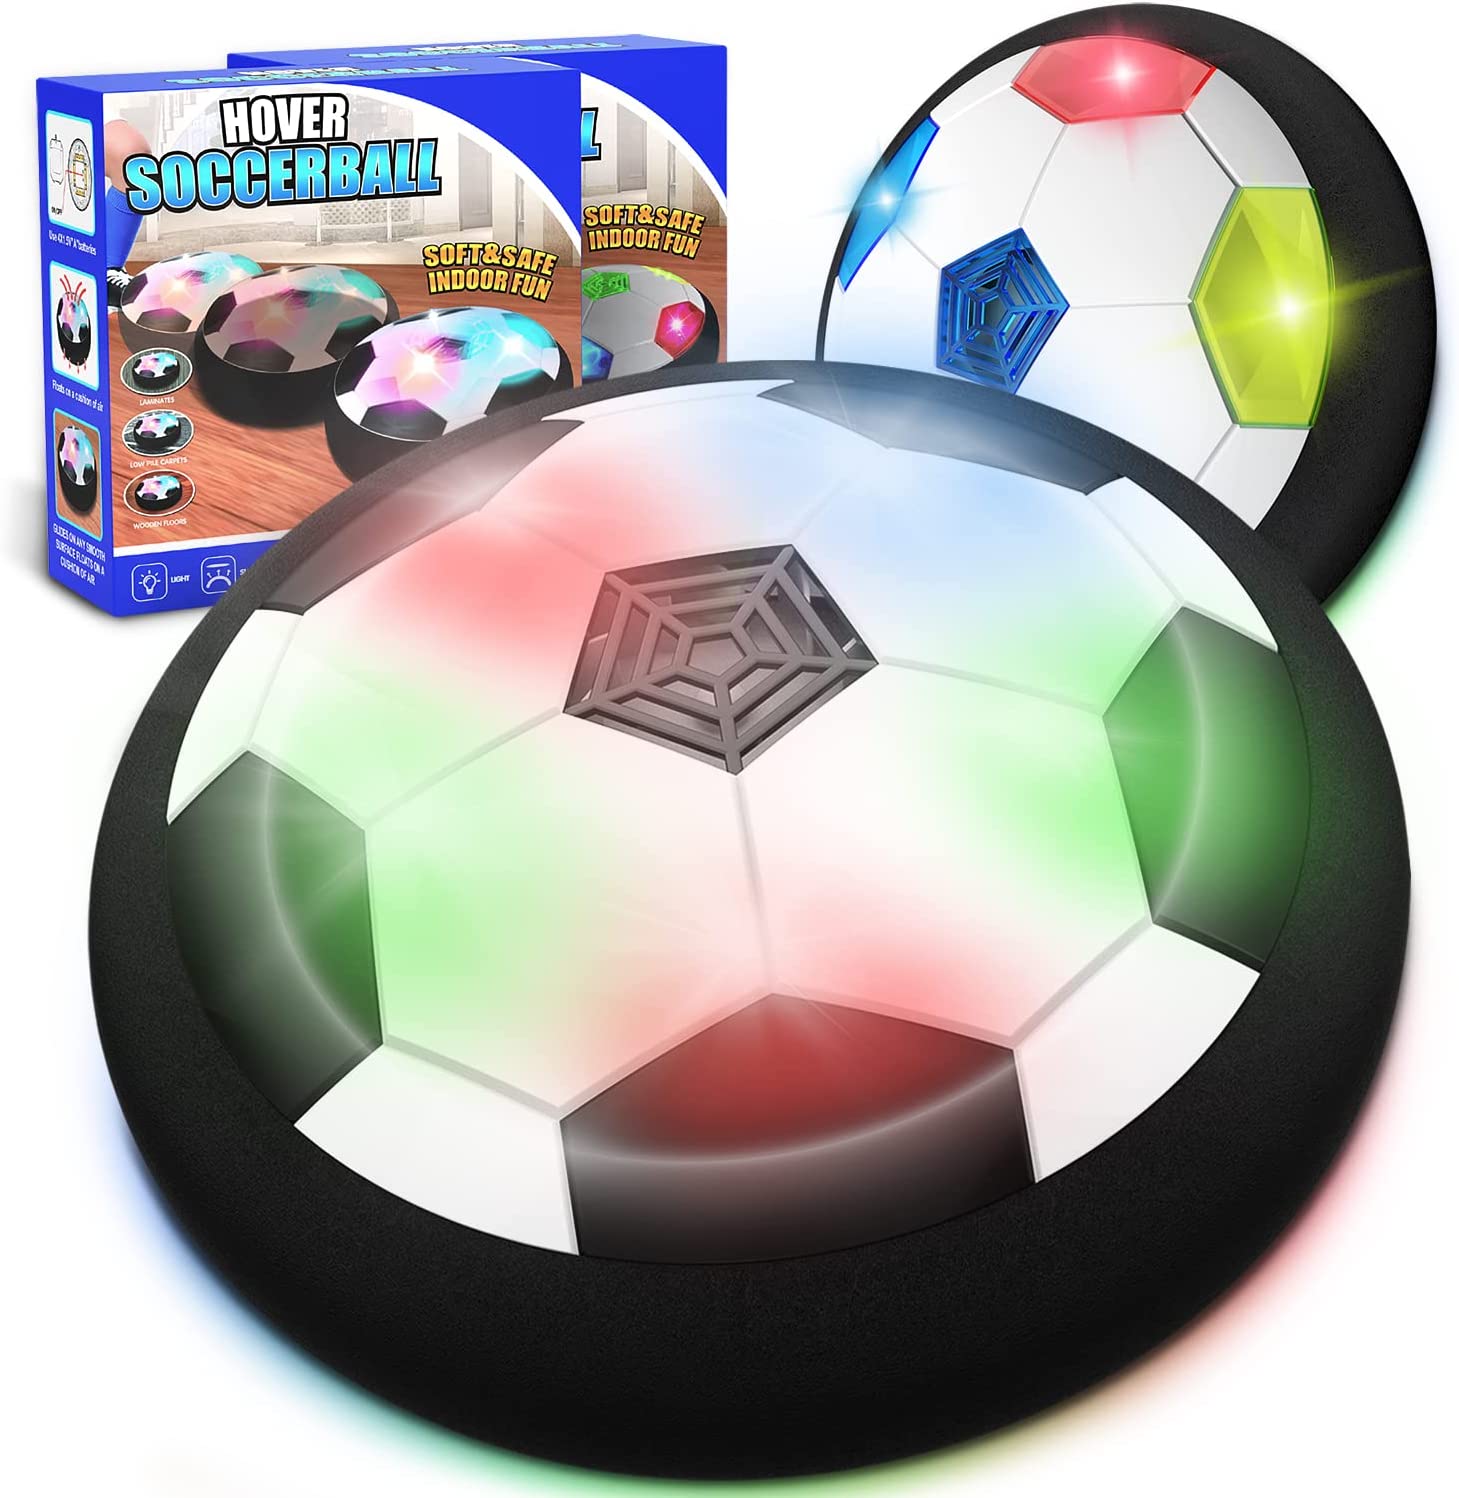 KKONES Rebounding Multifloor Hover Soccer Ball, 2-Pack